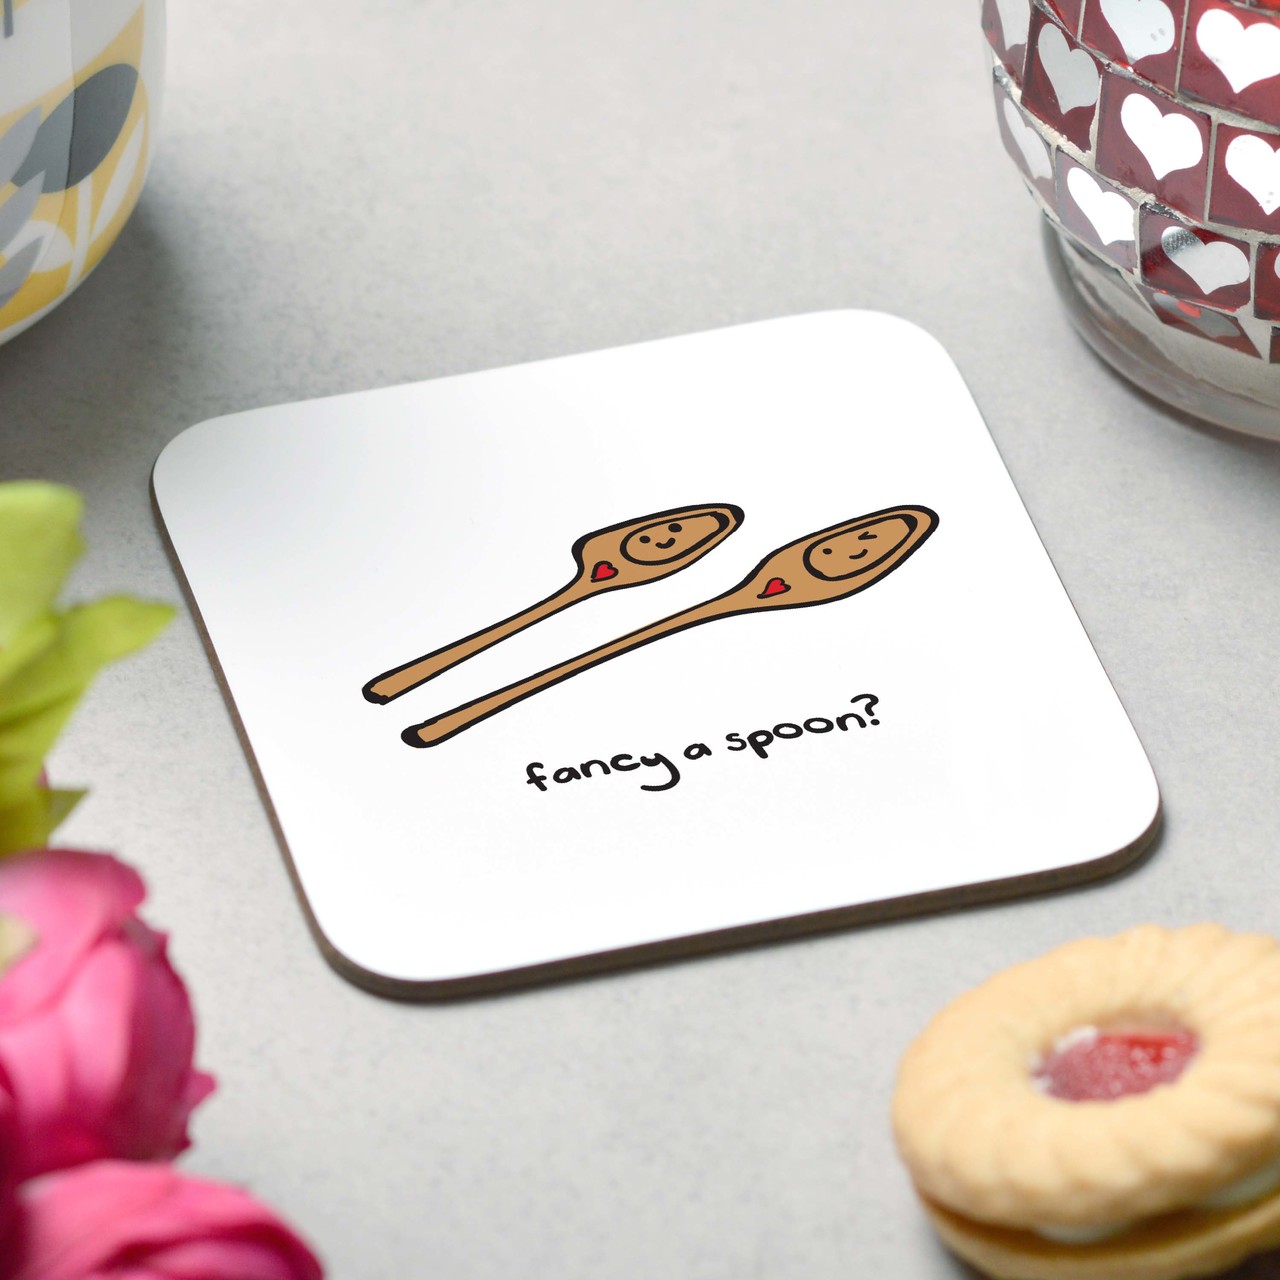 Fancy a Wooden Spoon Coaster